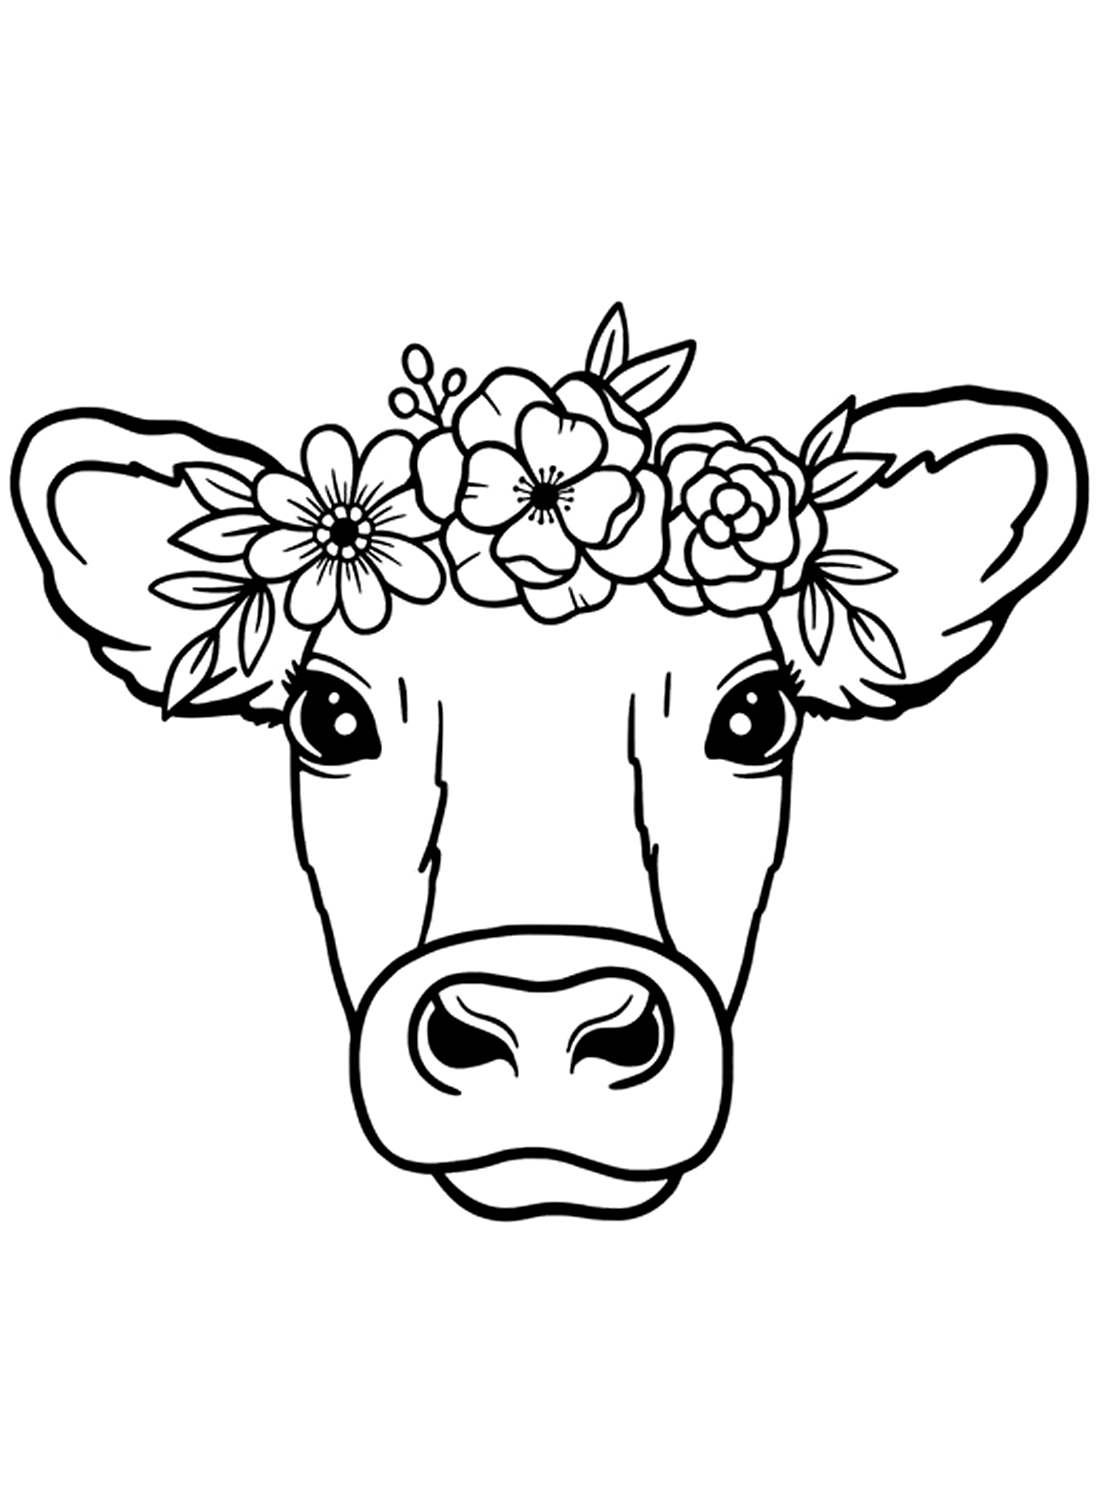 Uma imagem de cabeça de vaca